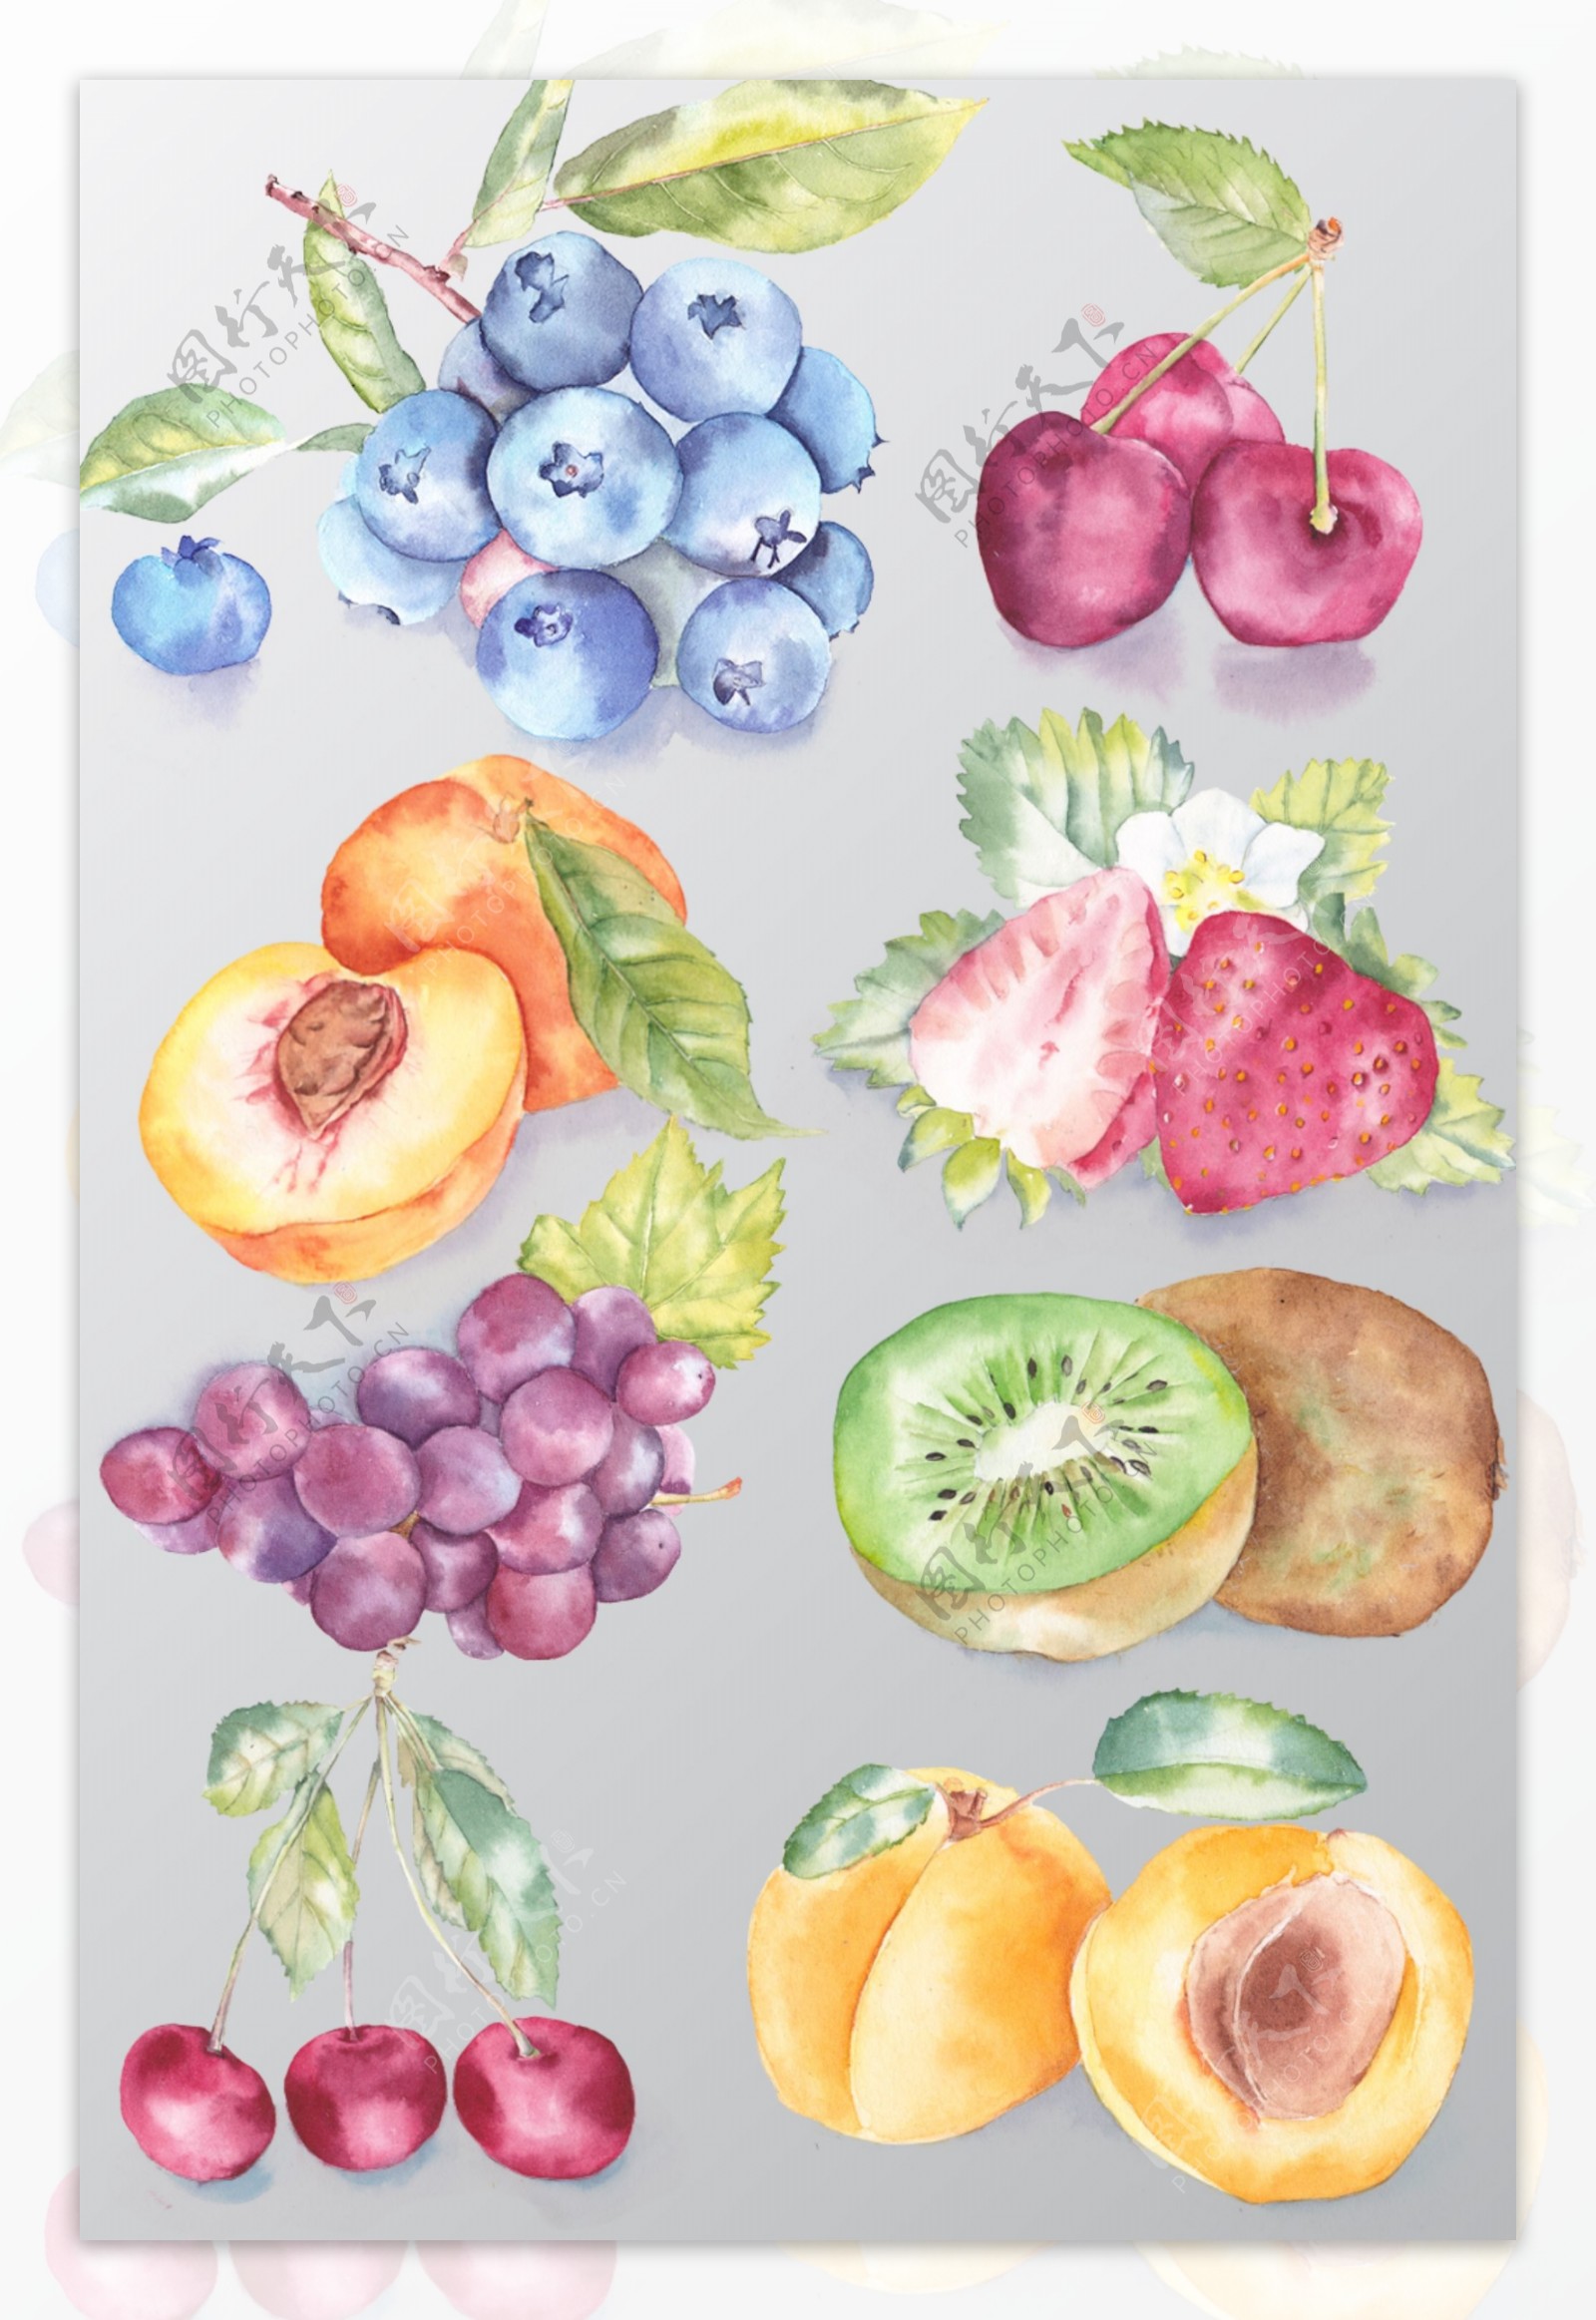 水果插画